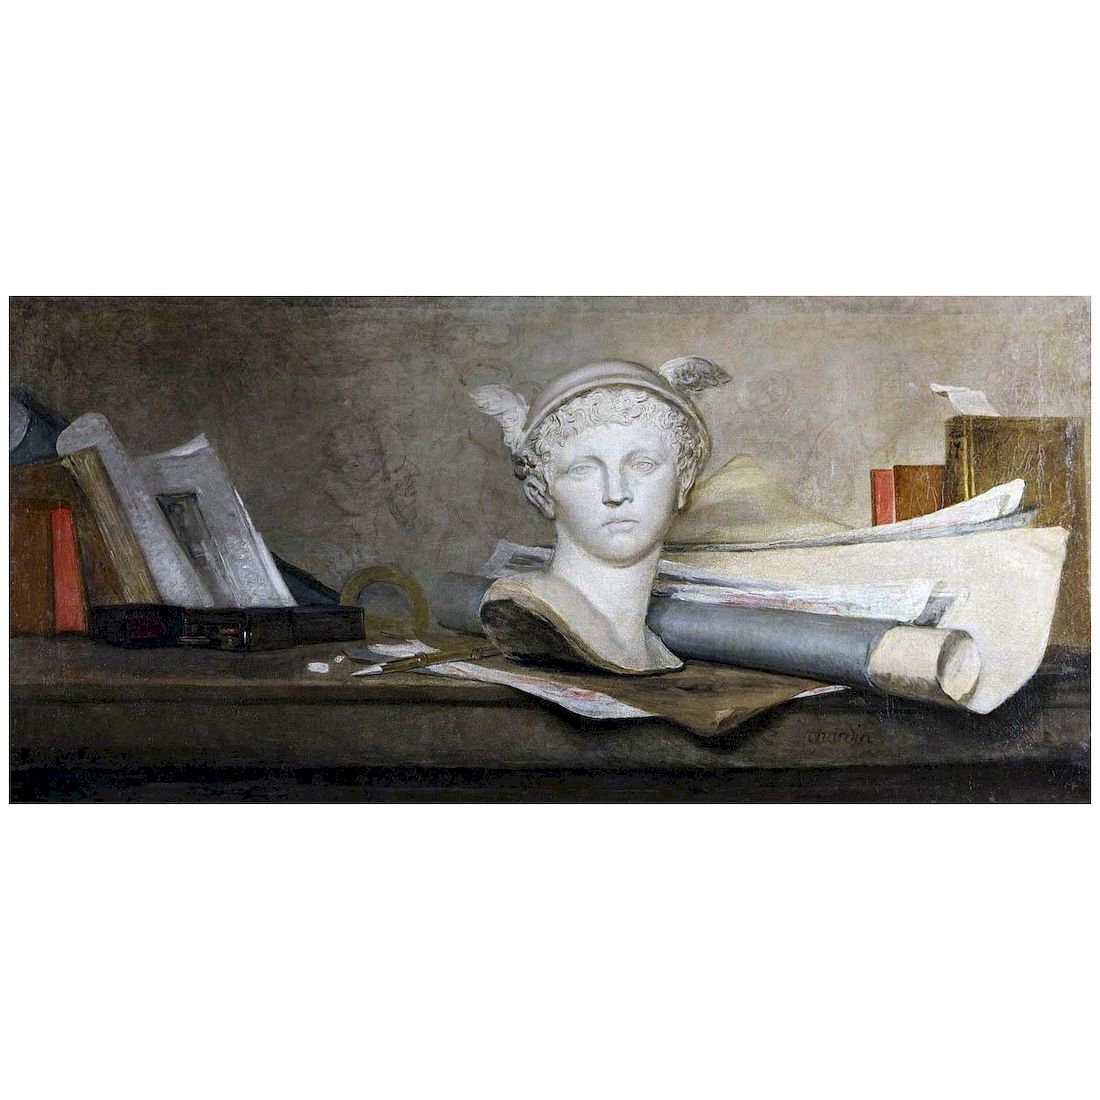 Jean-Baptiste Chardin. Les Attributs des Arts avec un Buste de Mercure. 1728. Pushkin Museum